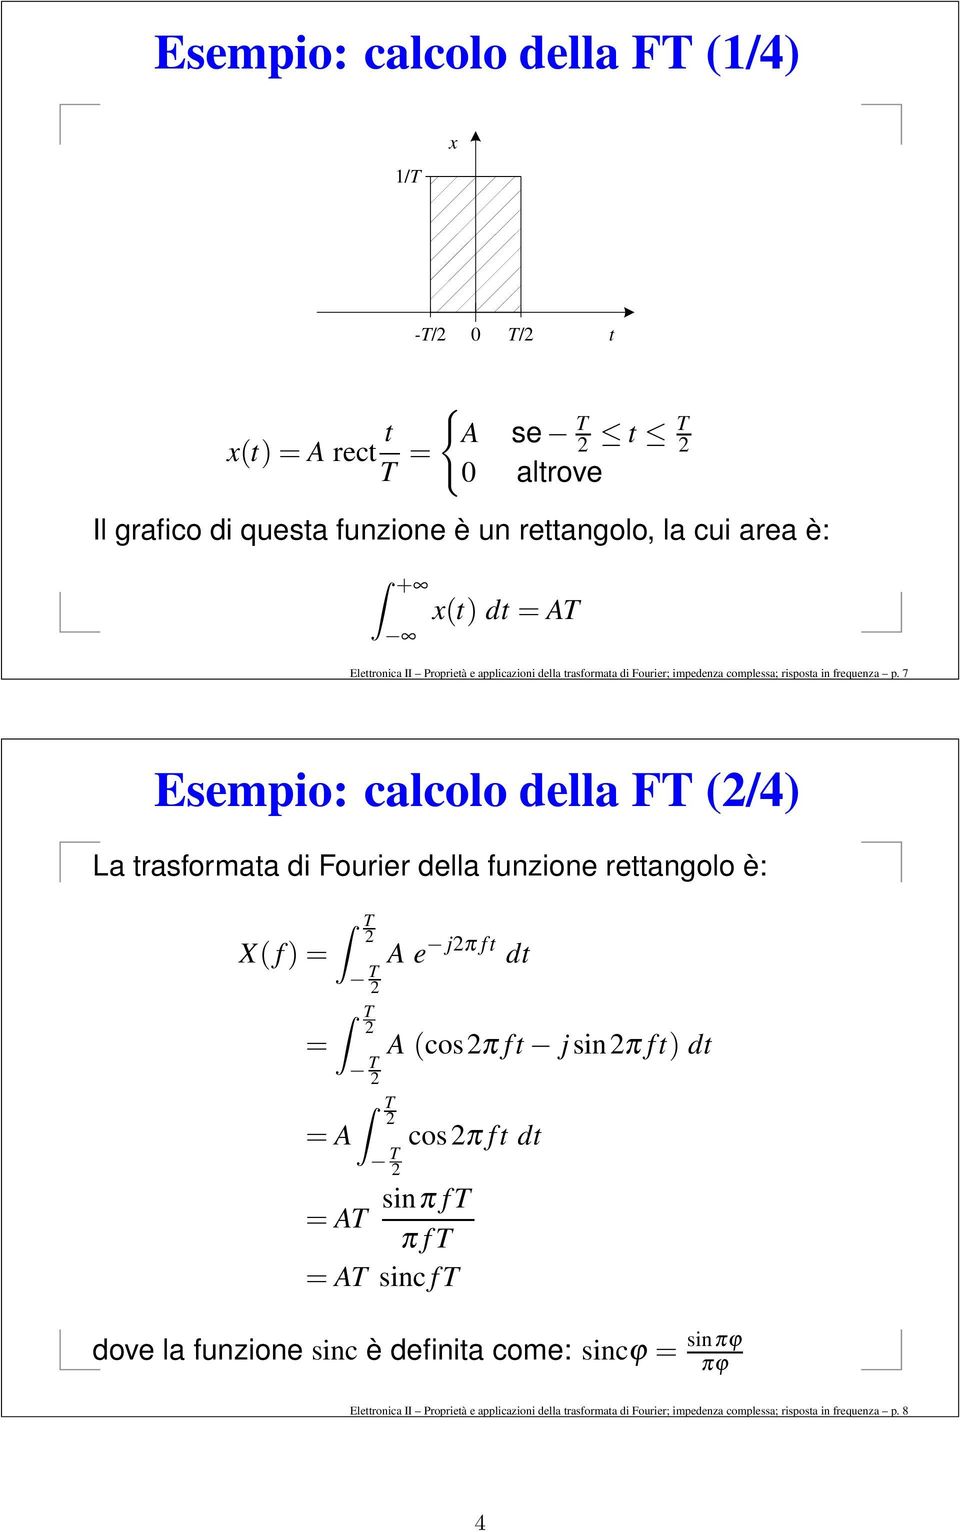 7 Esempio: calcolo della FT (2/4) La trasformata di Fourier della funzione rettangolo è: X( f ) = = T 2 T 2 T 2 T 2 A e j2π ft dt A (cos2π ft j sin2π ft) dt T 2 = A